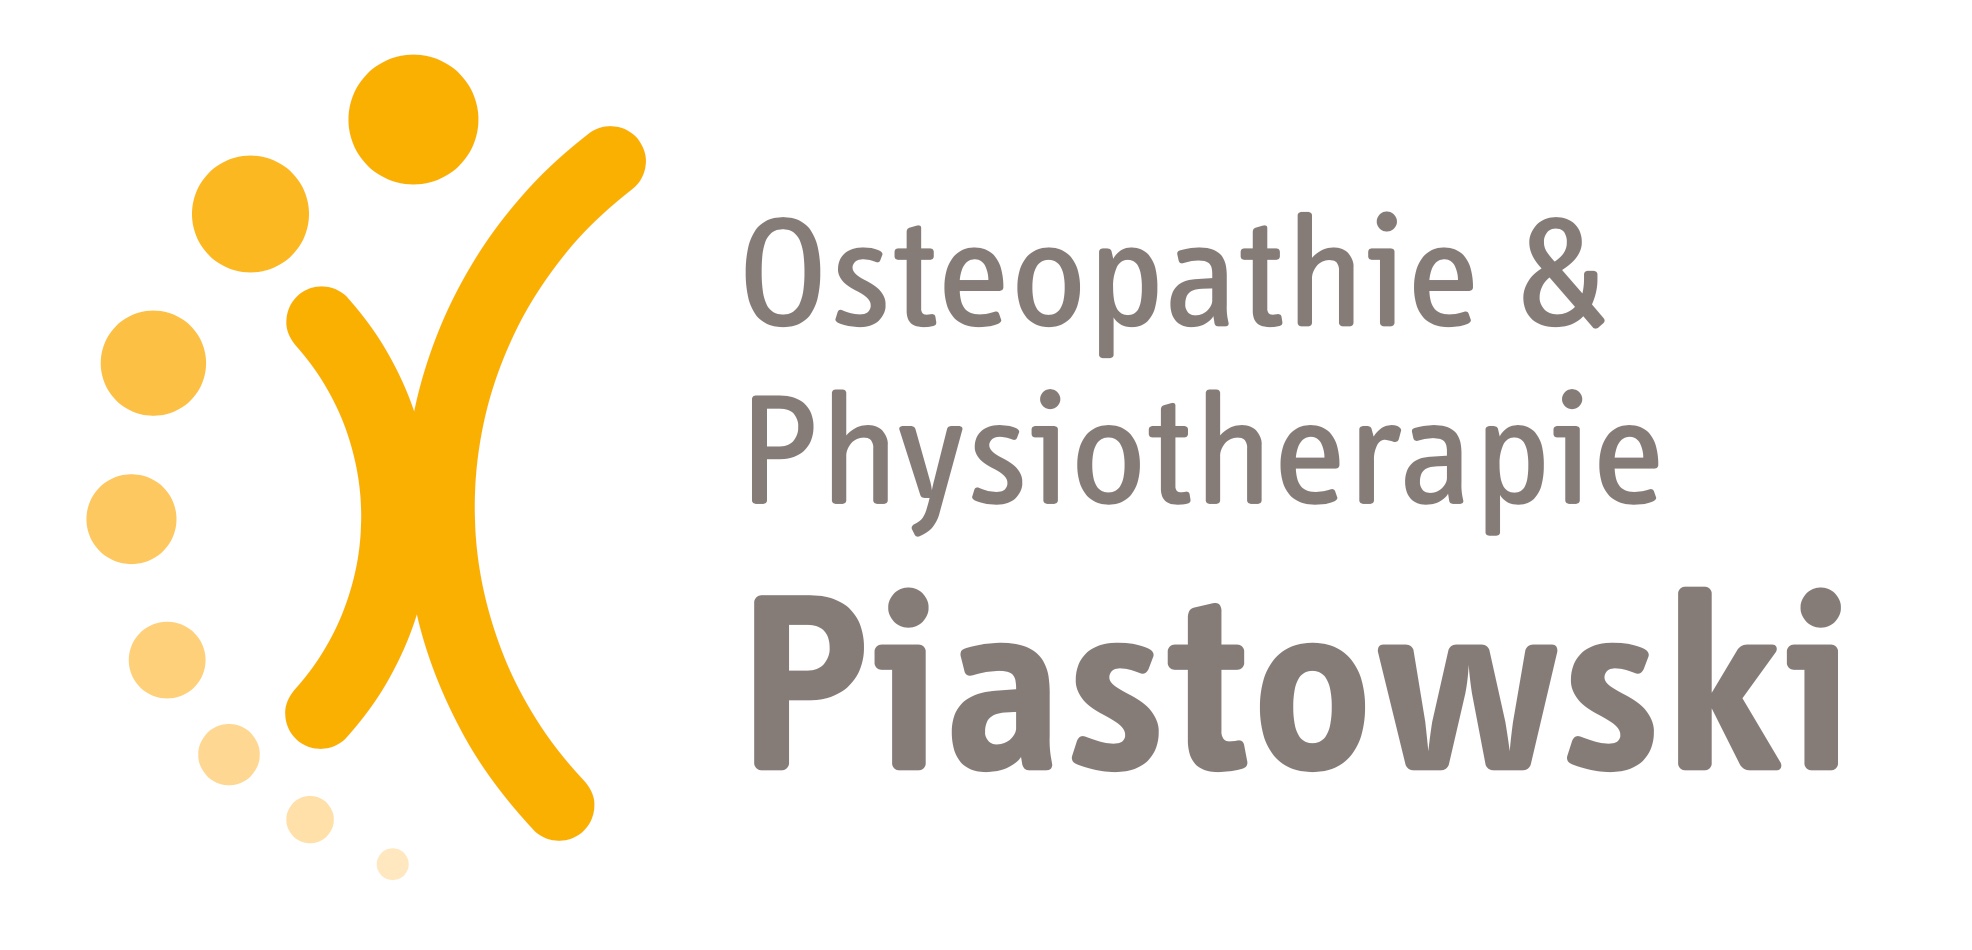 Osteopathie & Physiotherapie Piastowski